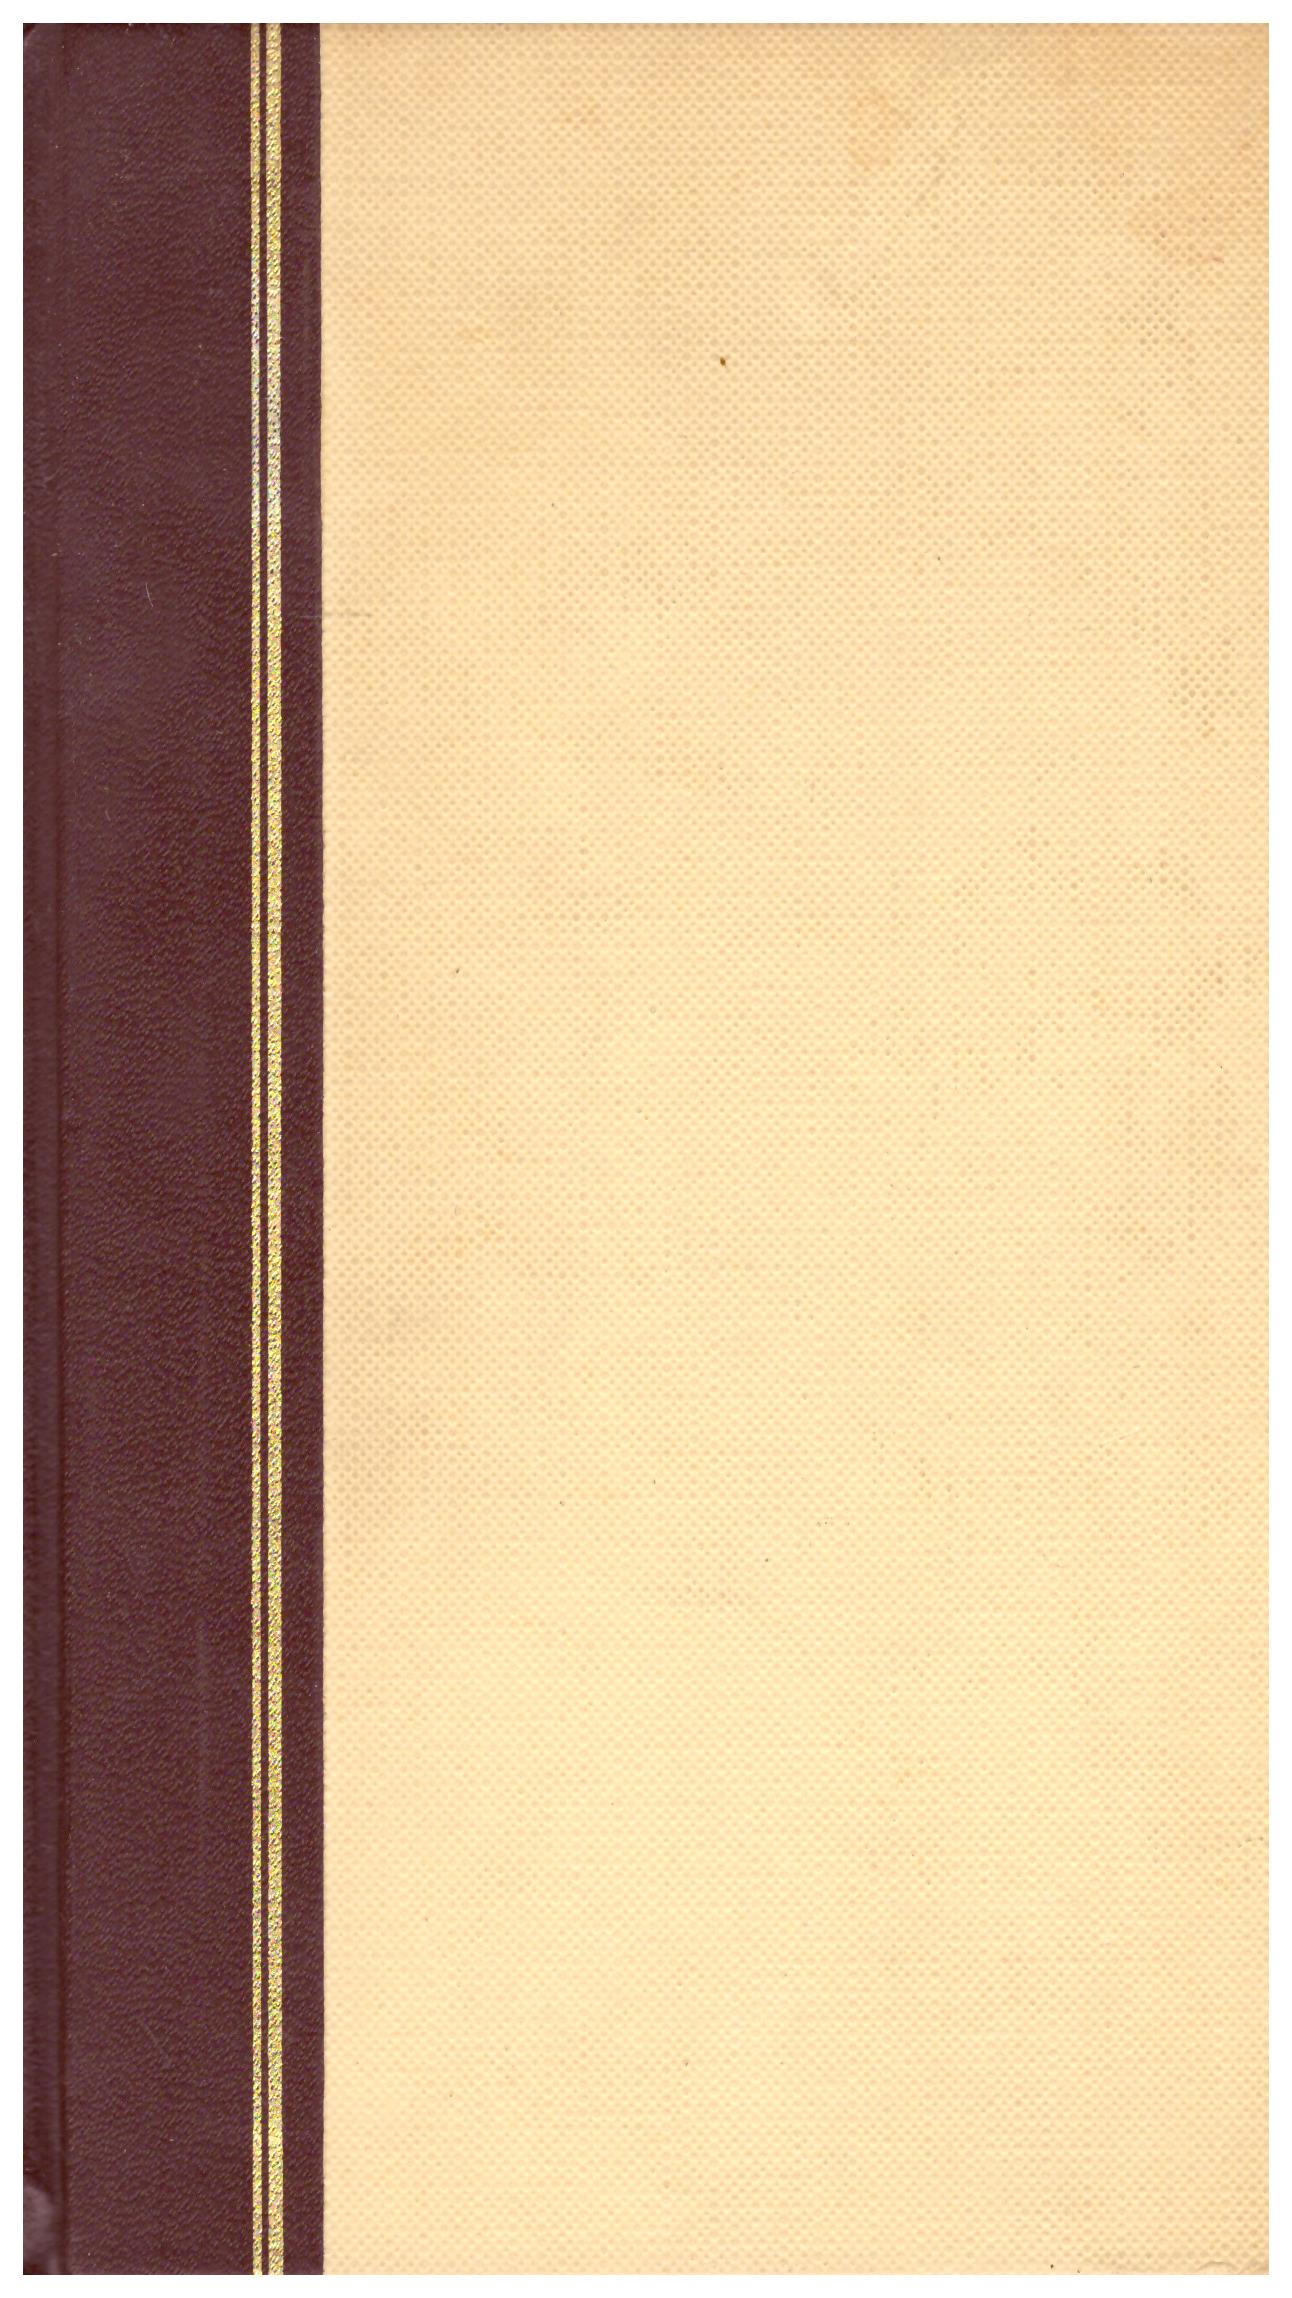 Titolo: Il giocatore  Autore: Fiodor Dostoevskij Editore: mondadori, 1970